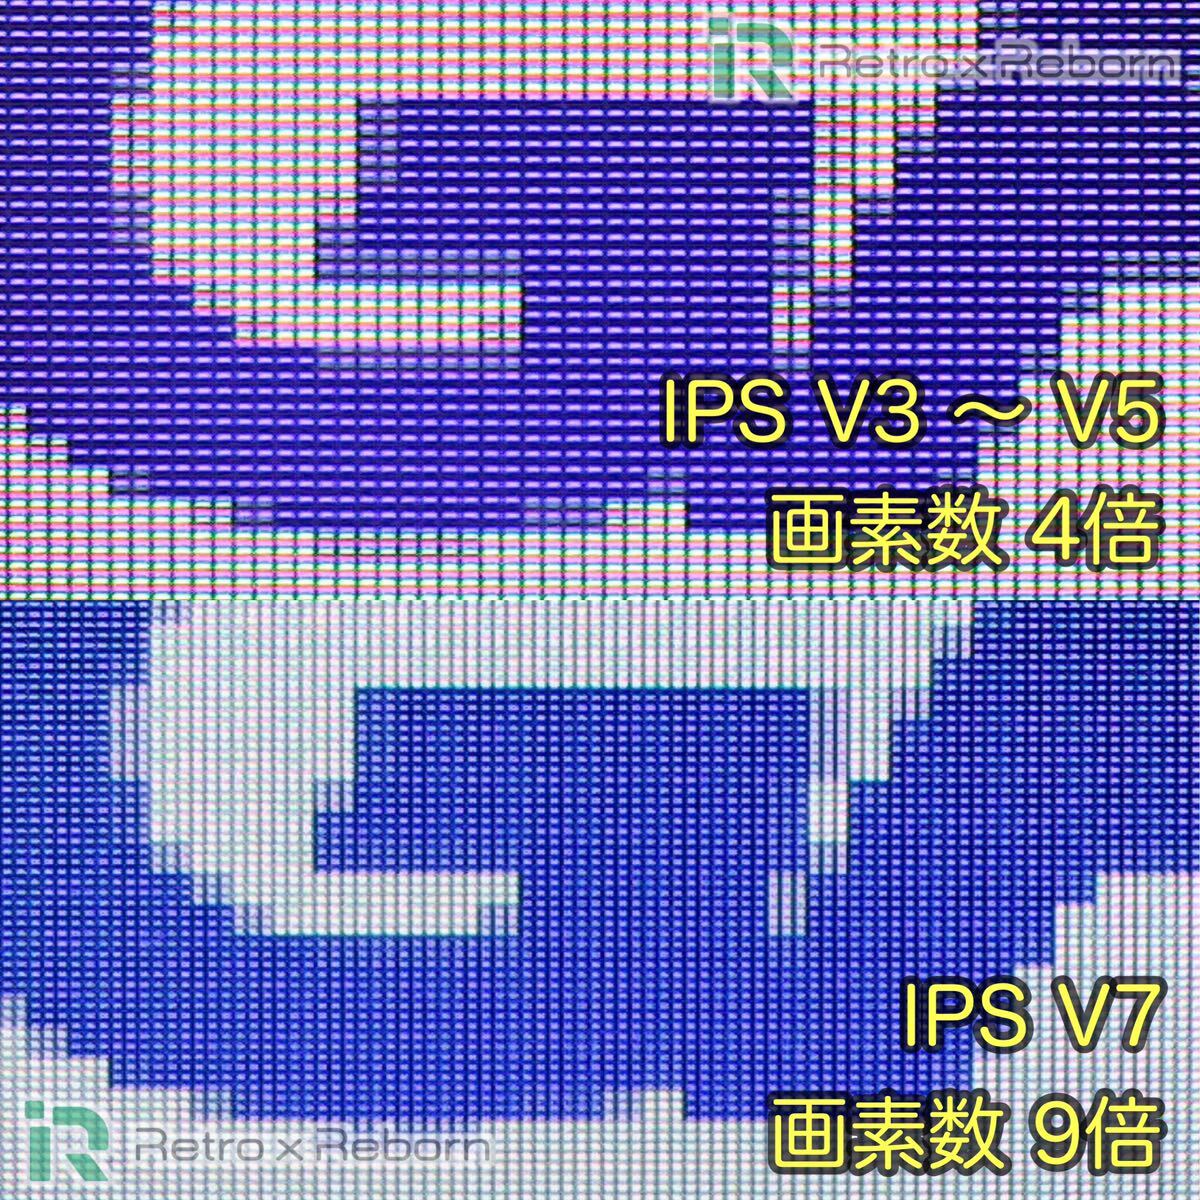 ゲームボーイアドバンス SP 本体 IPS V7 バックライト液晶搭載 037